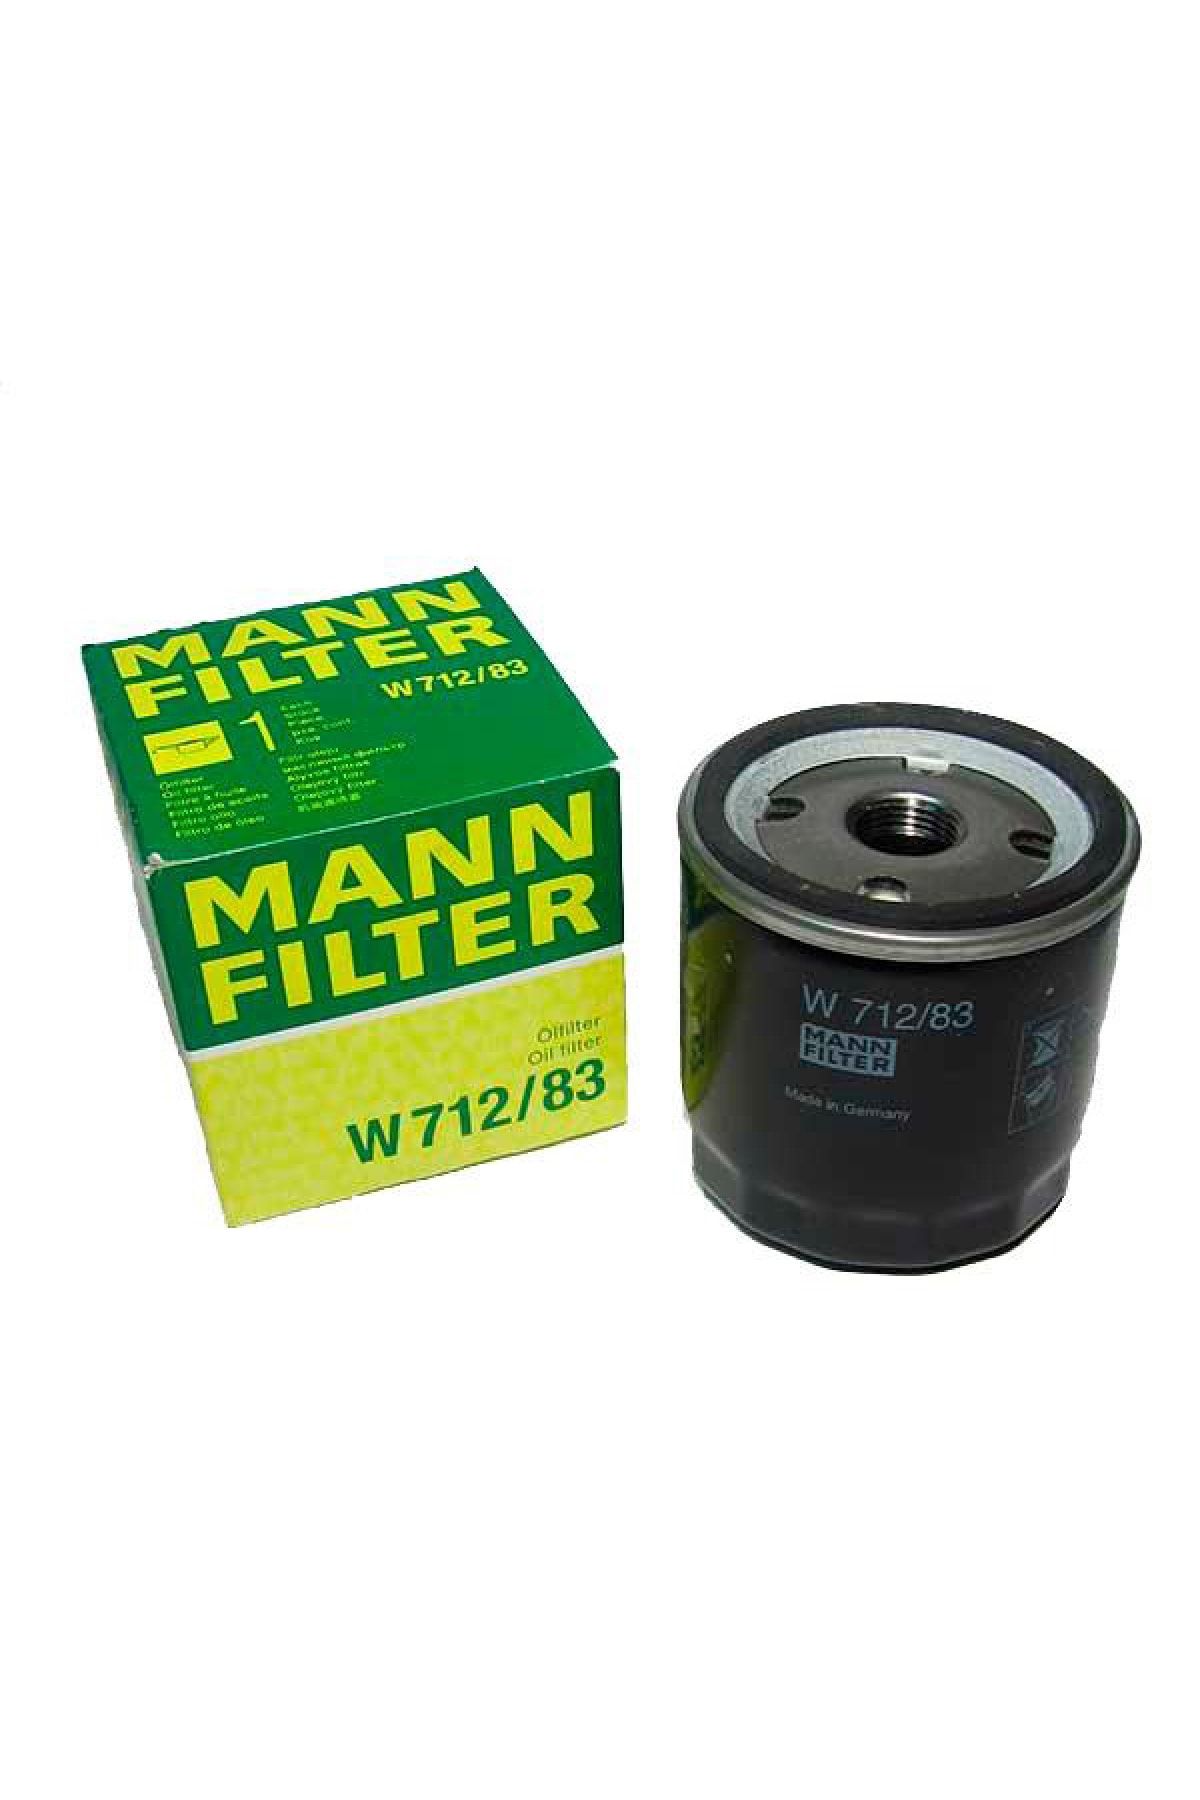 Mann Filter Toyota Auris 1.4 D4d Dizel Yağ Filtresi 2007-2008